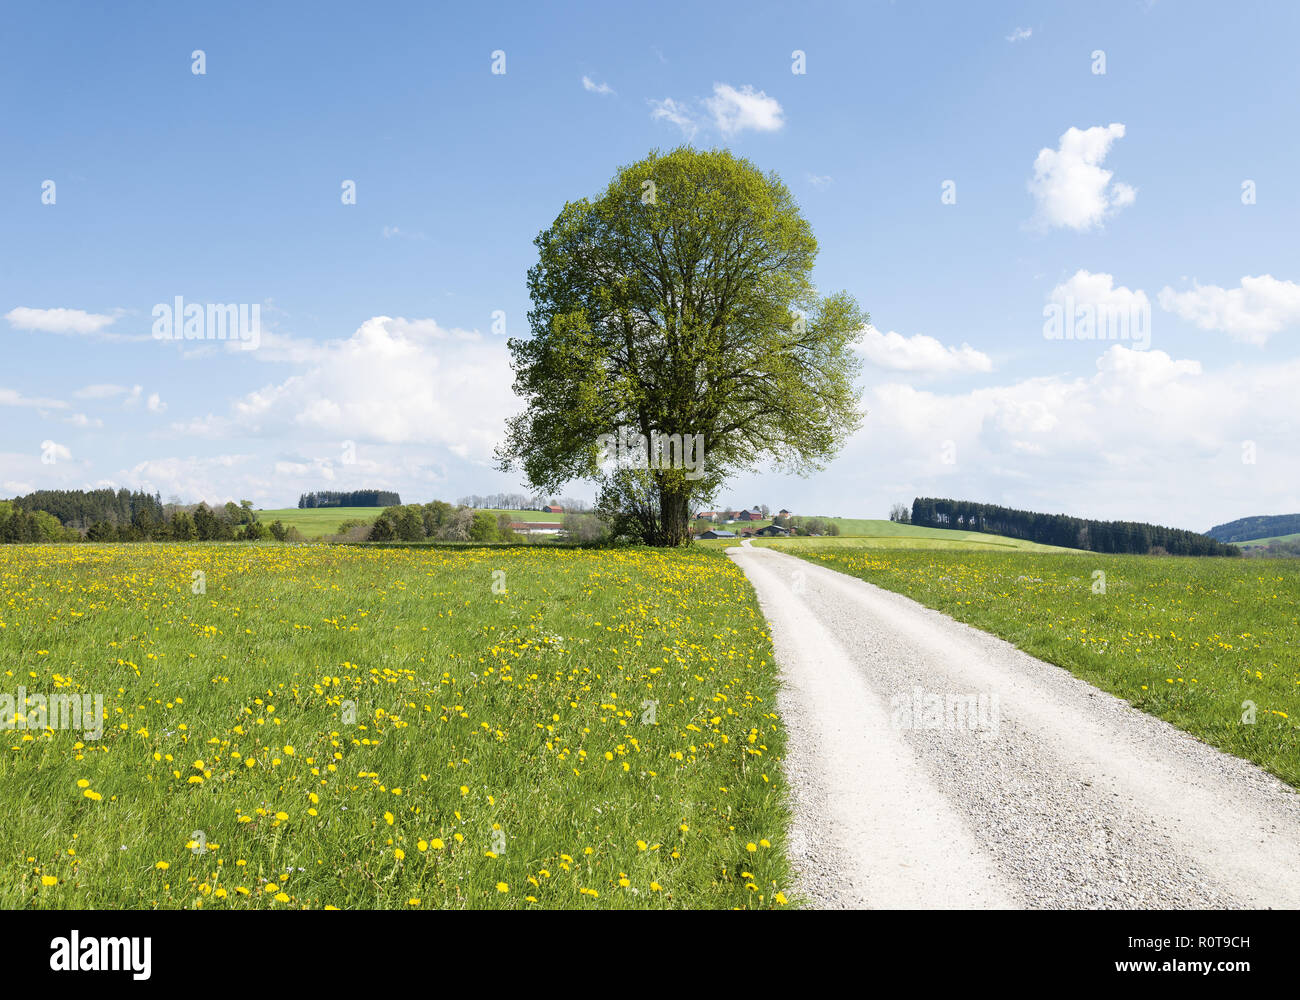 Fruehlingslandschaft mit Laubbaum und Weg Foto Stock